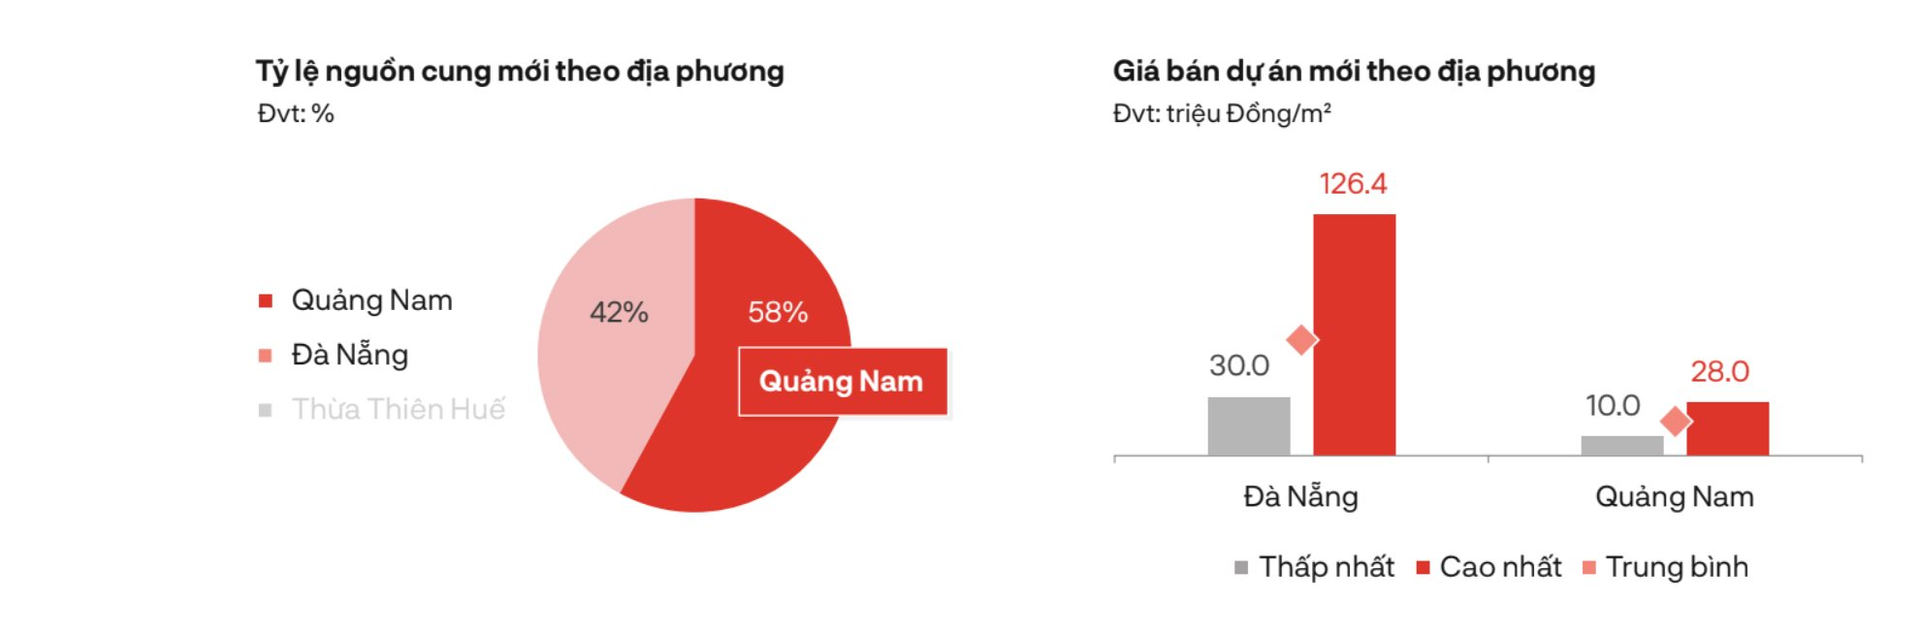 Một phân khúc BĐS tại Đà Nẵng đạt mức giá sơ cấp gần 130 triệu đồng/m2, xuất hiện nhà đầu tư “cá mập” vào gom hàng trước Tết - Ảnh 2.